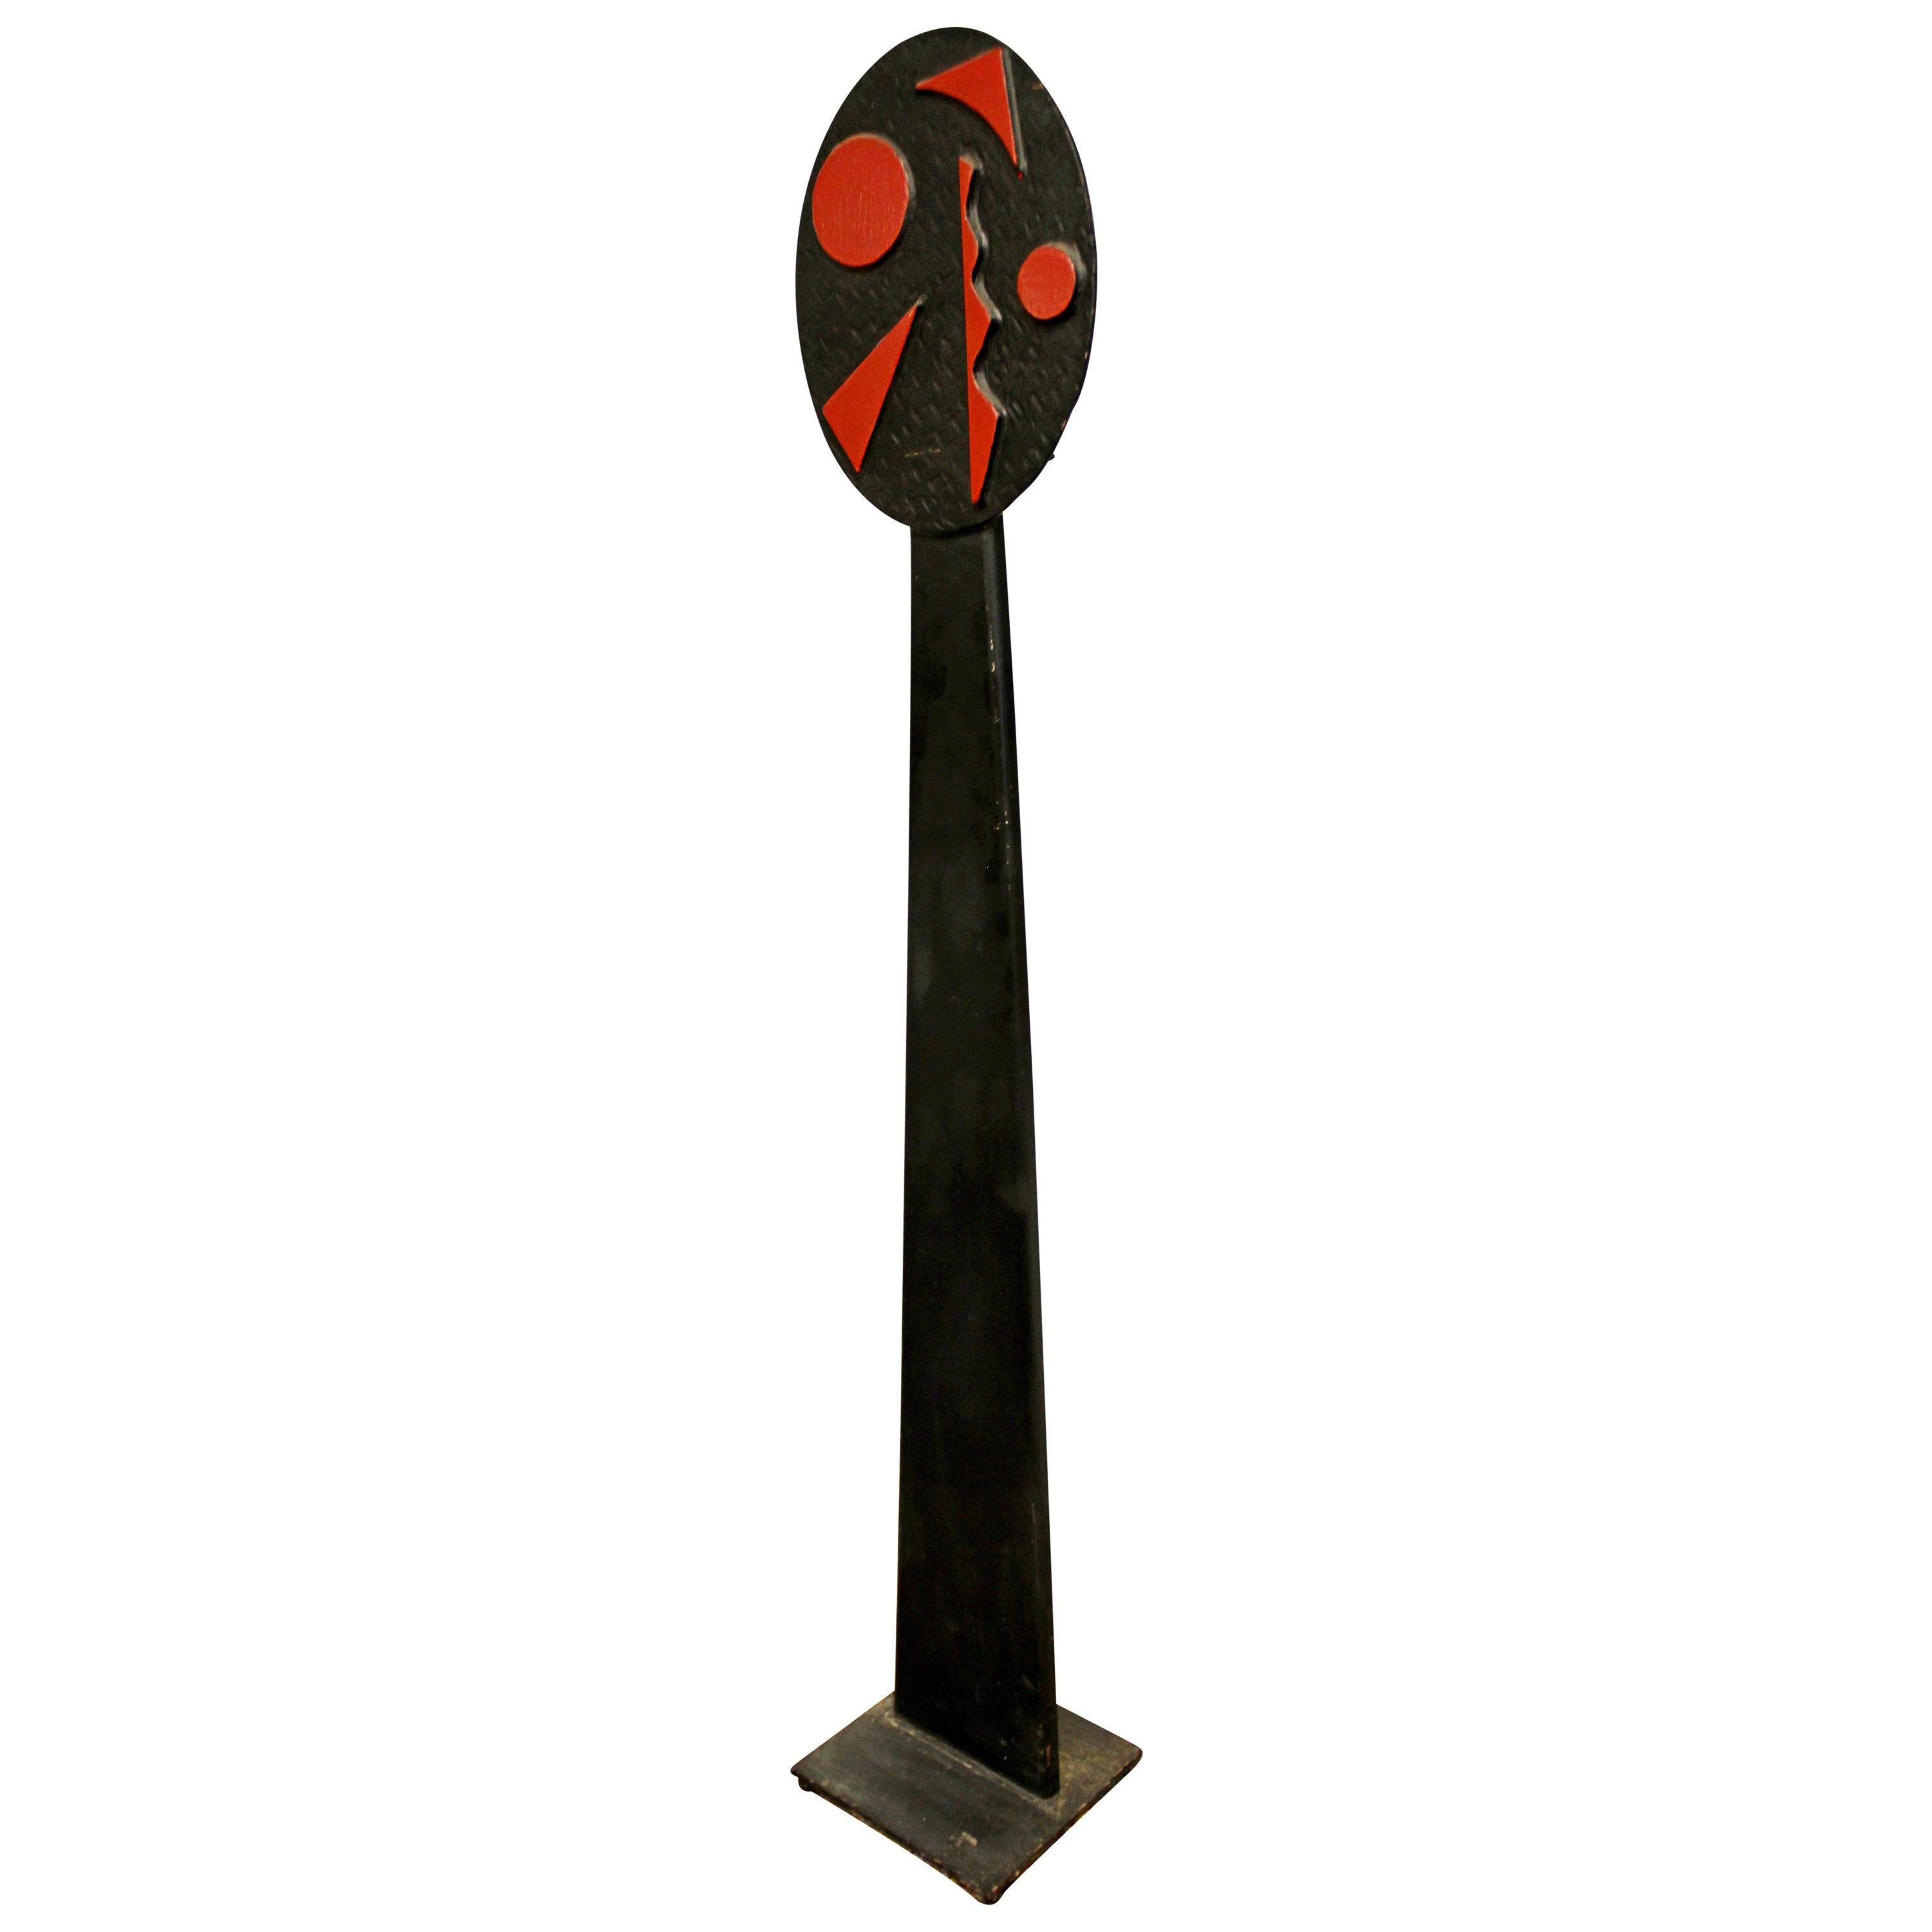 Modernist Forged Black Red Metal Abstract Indoor Outdoor Floor Sculpture 2000s